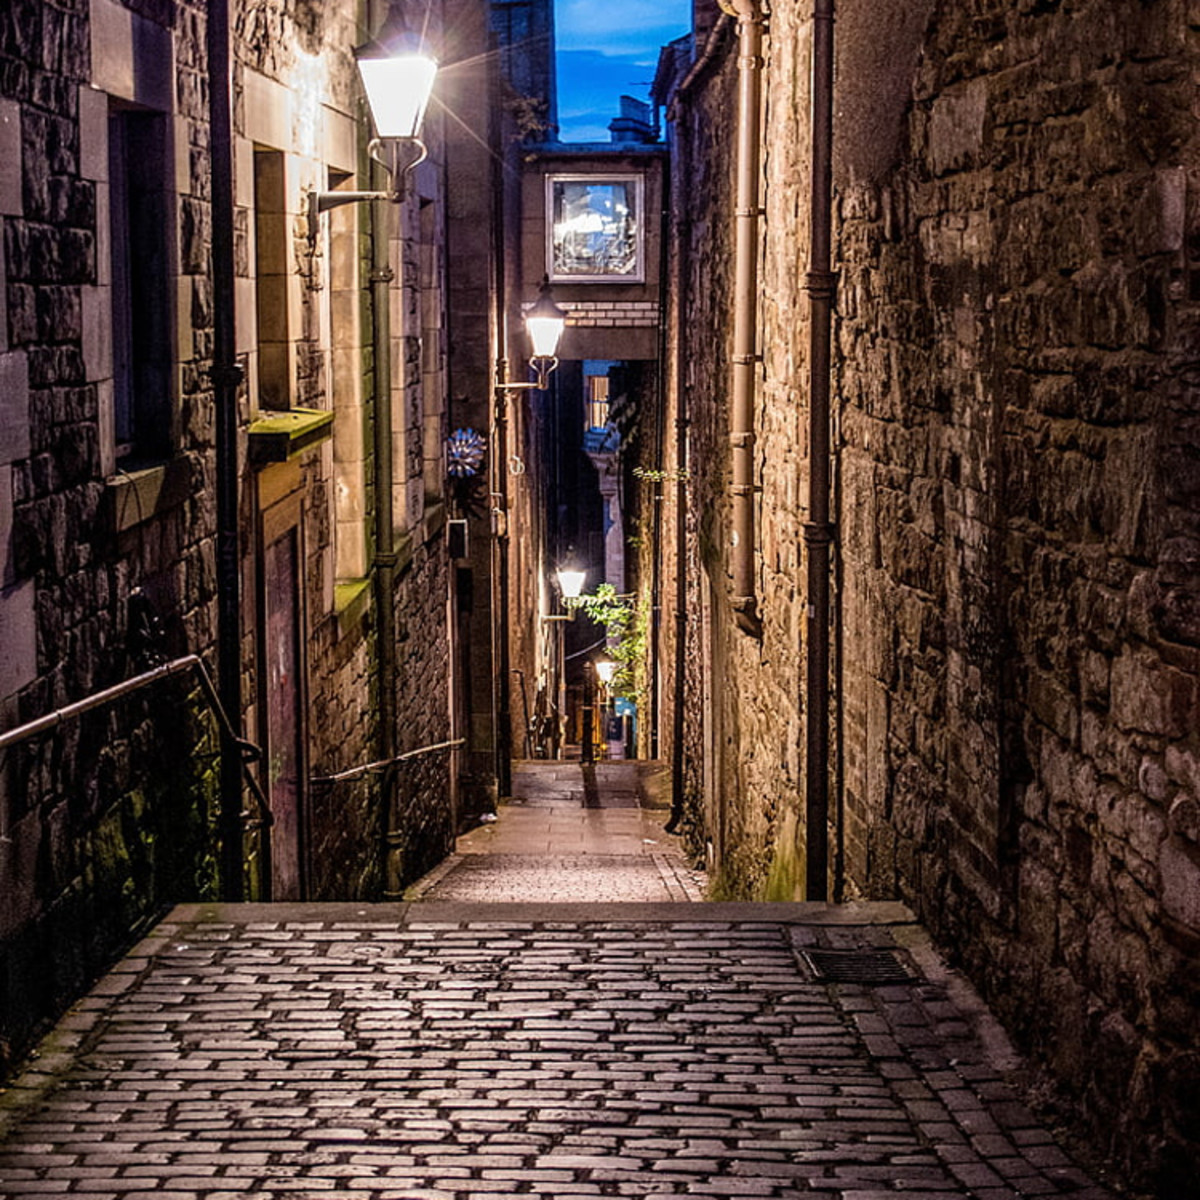 被认为是世界上最闹鬼的城市之一,爱丁堡老城部分有大量的故事。